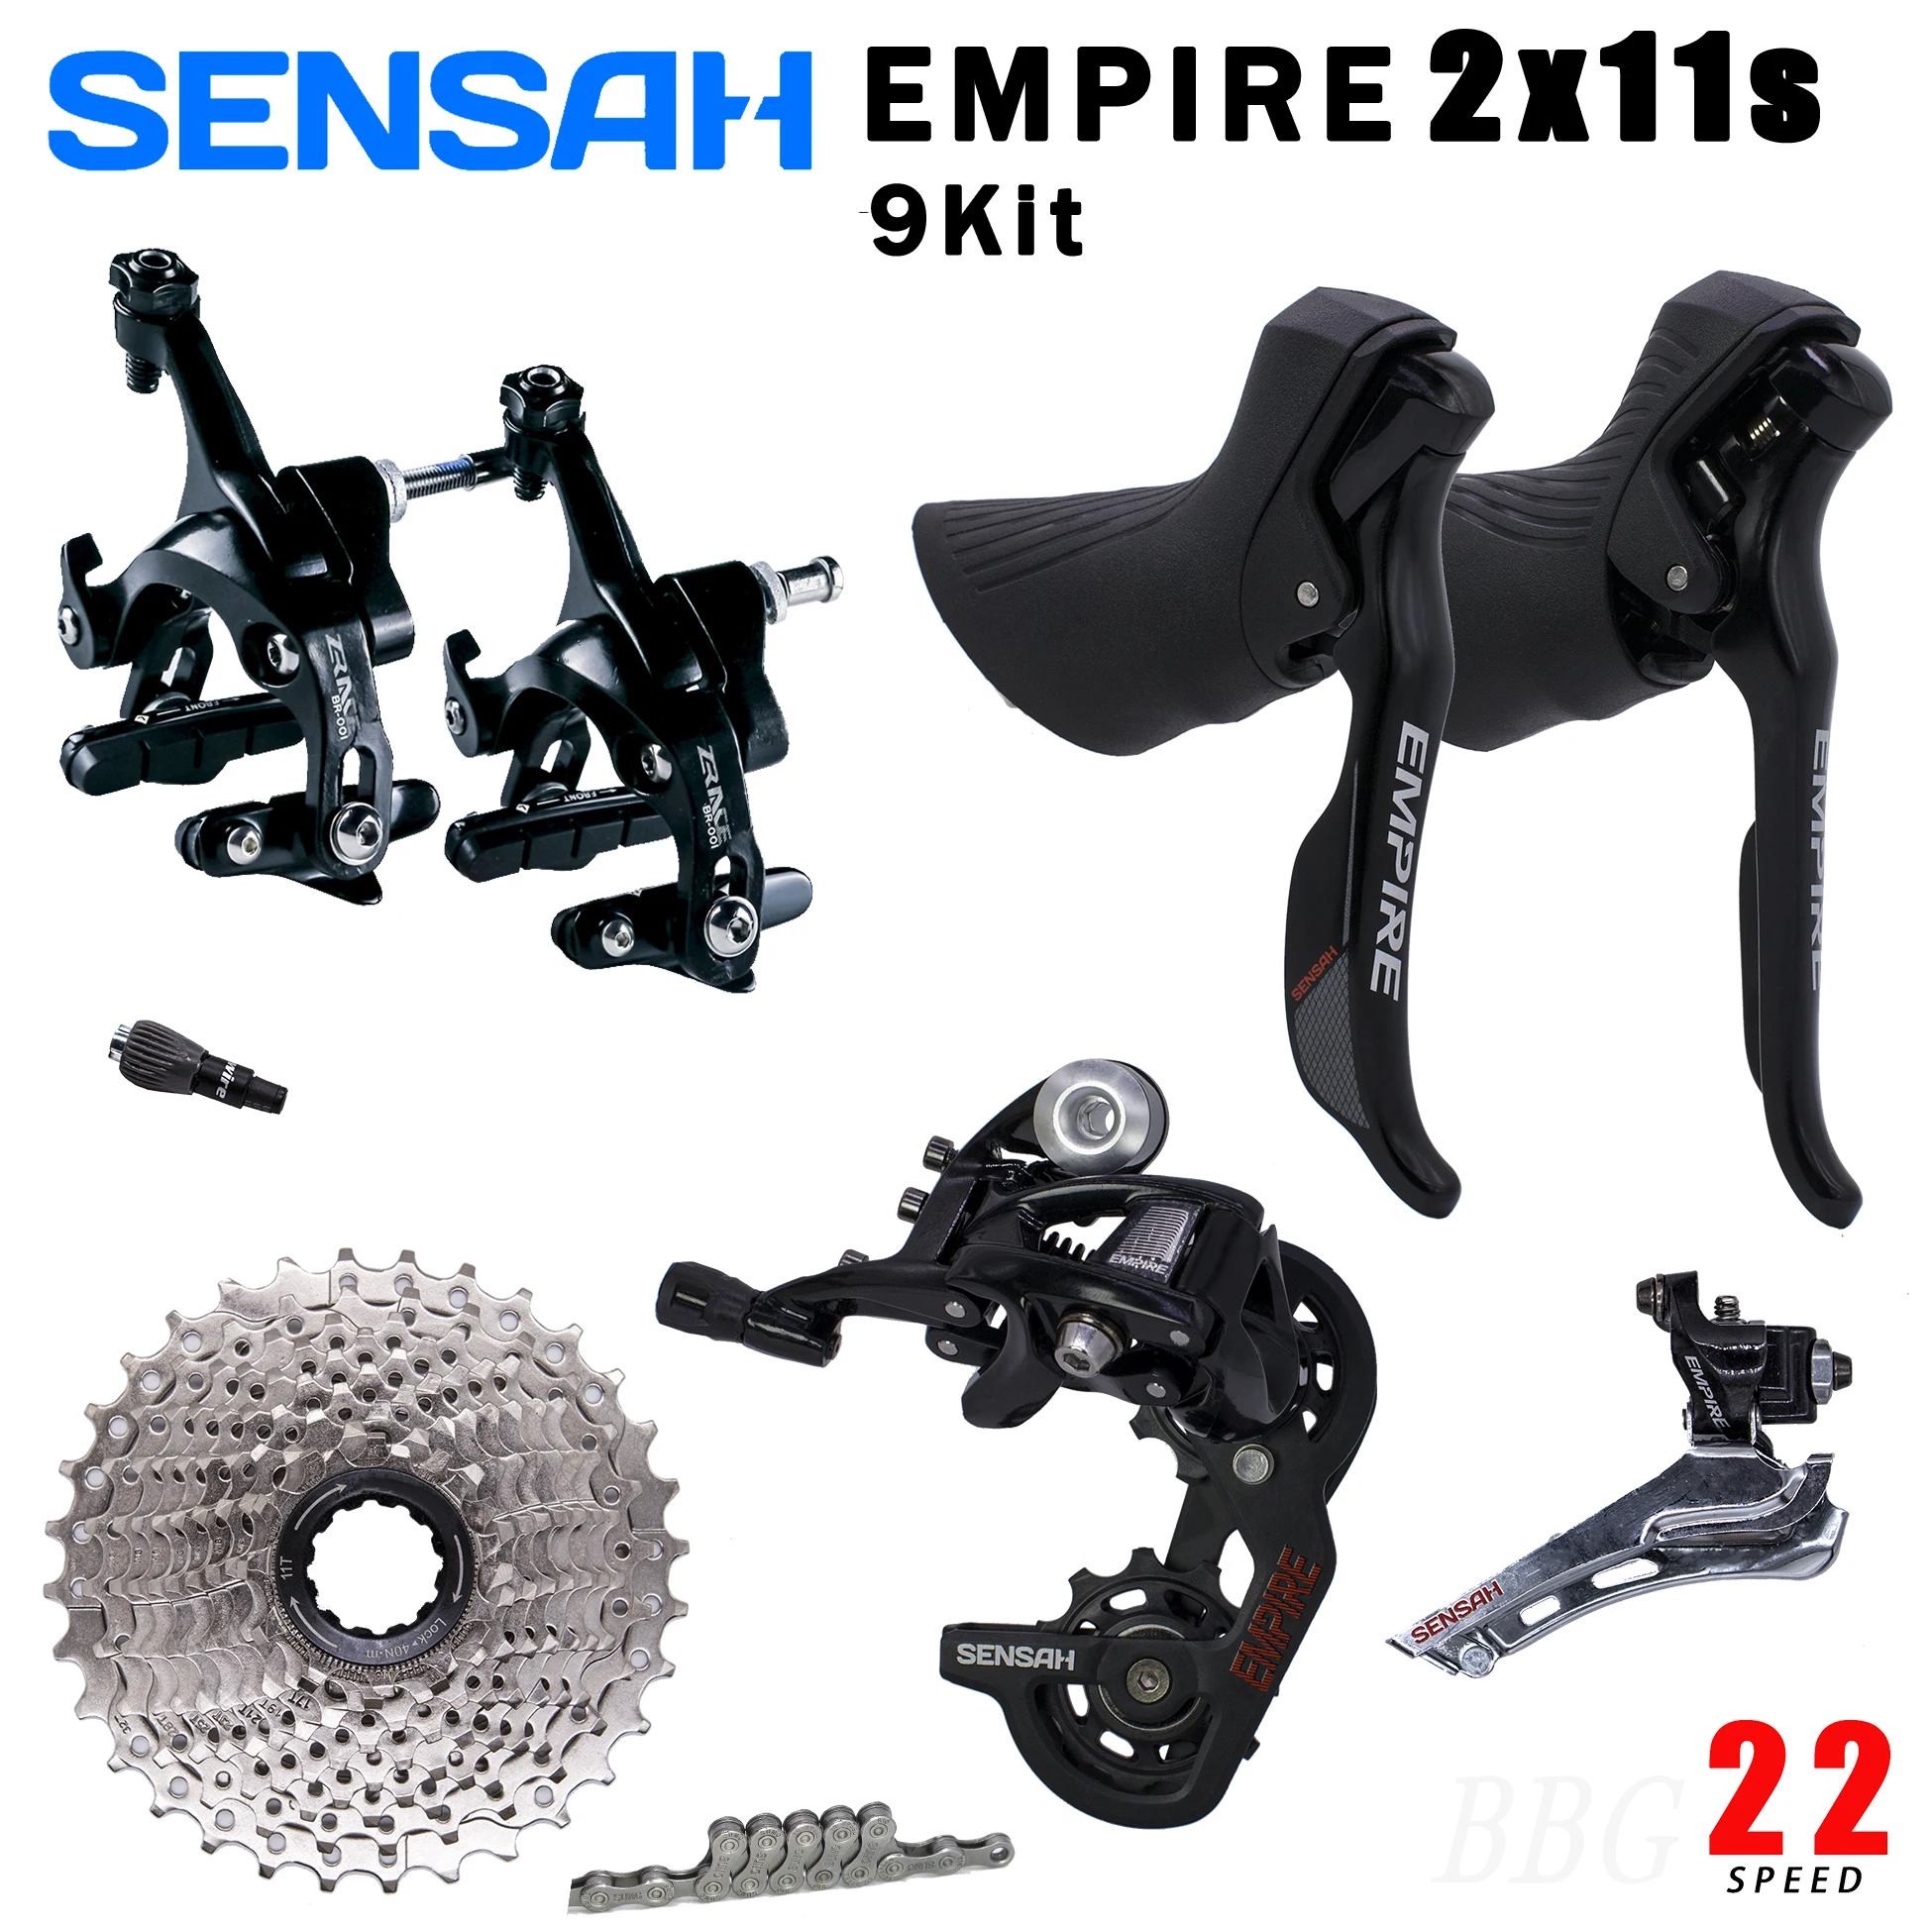 

SENSAH EMPIRE 2x11 Speed 22s S For Road Bike Groupset Kit Shifter Derailleur Cassette 11v Caliper Brake UT 5800 R7000 R8000 105